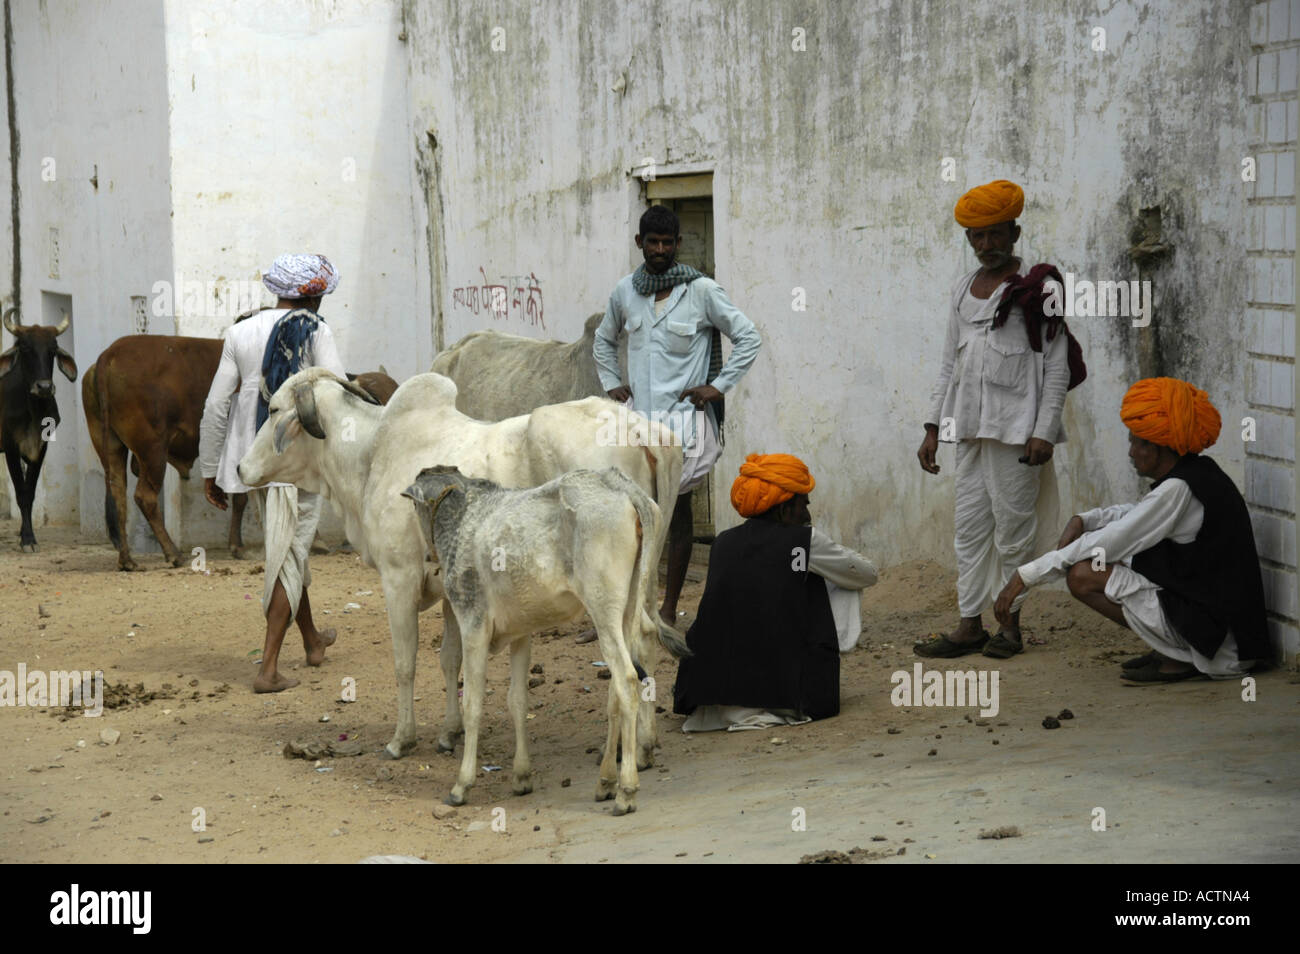 Hommes portant le turban orange indien avec des vaches sacrées à un mur de la maison blanche Pushkar Rajasthan Inde Banque D'Images